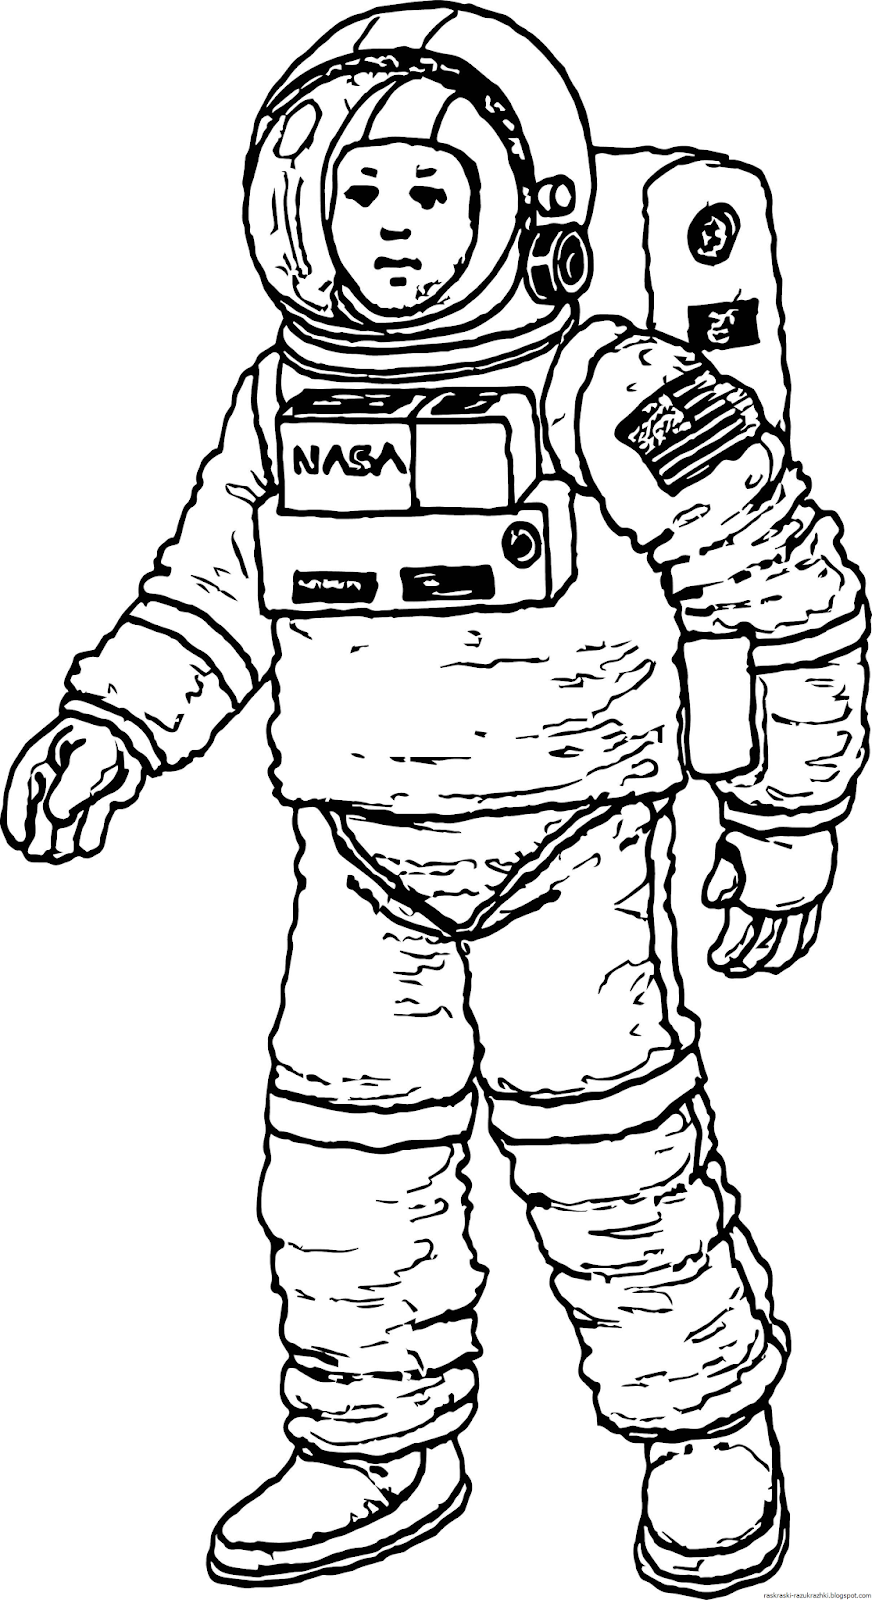 Космонавт раскраска для детей. Раскраска про космос и Космонавтов для детей. Космонавт рисунок. Рисунок Космонавта в скафандре для детей. Космонавт шаблон для вырезания распечатать